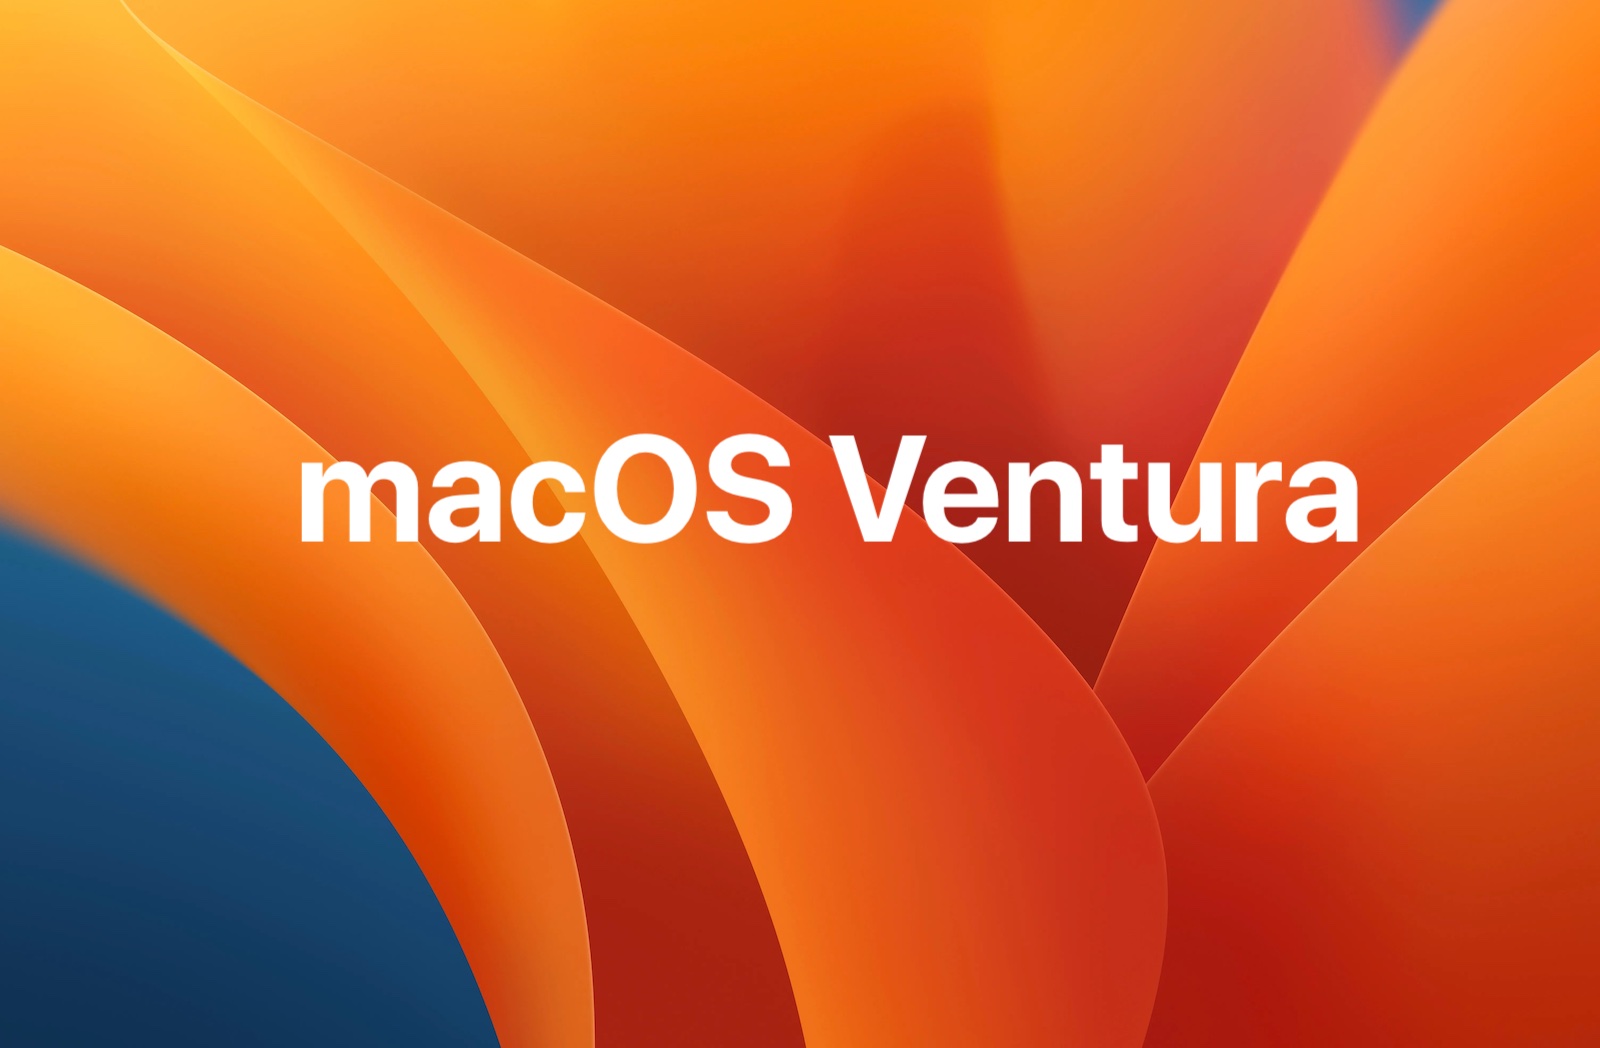 Вышла macOS Ventura 13.3 beta 1 для разработчиков